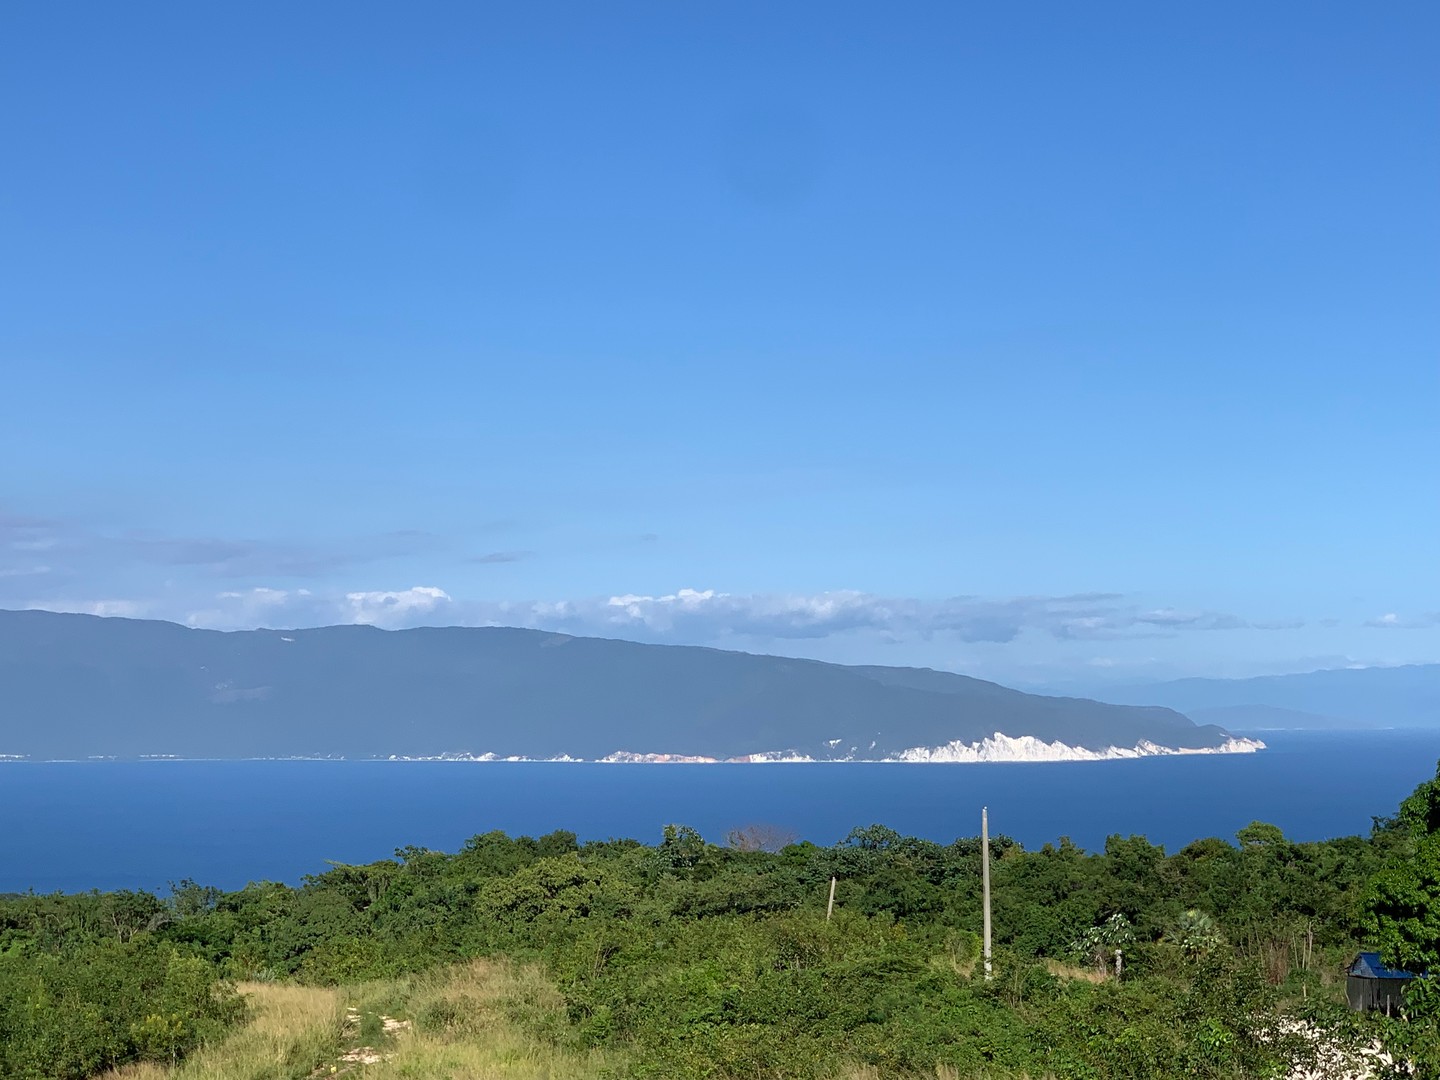 solares y terrenos - Venta de Terrenos en Barahona con hermosas vistas al mar !
